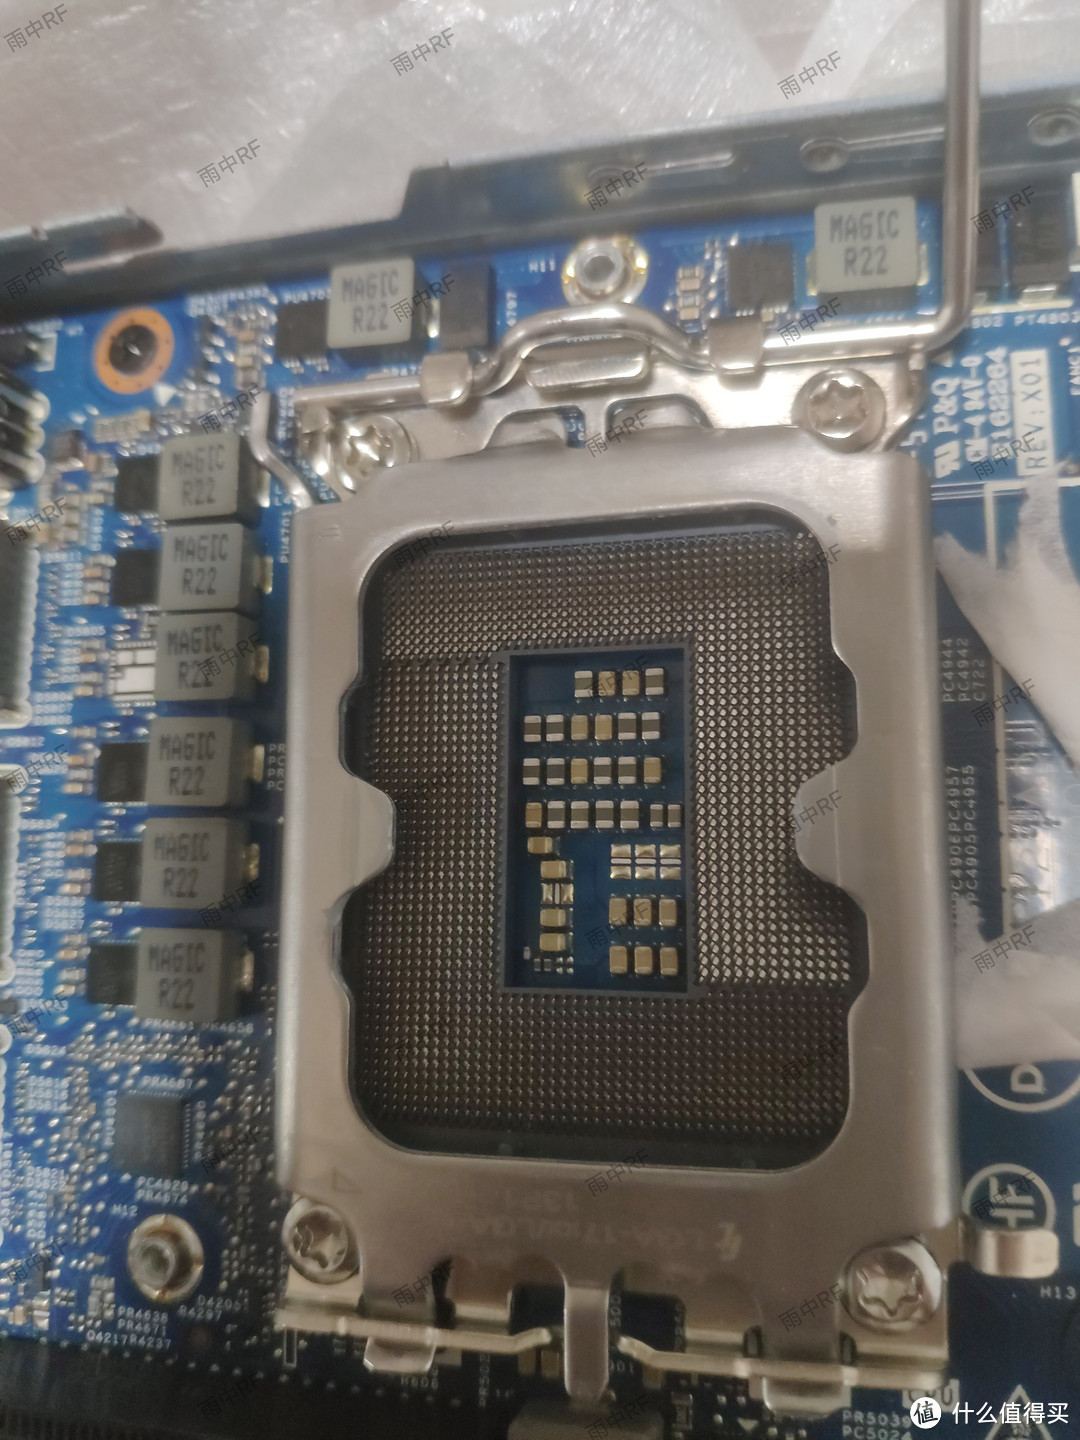 12代机器CPU底座下有部分空焊